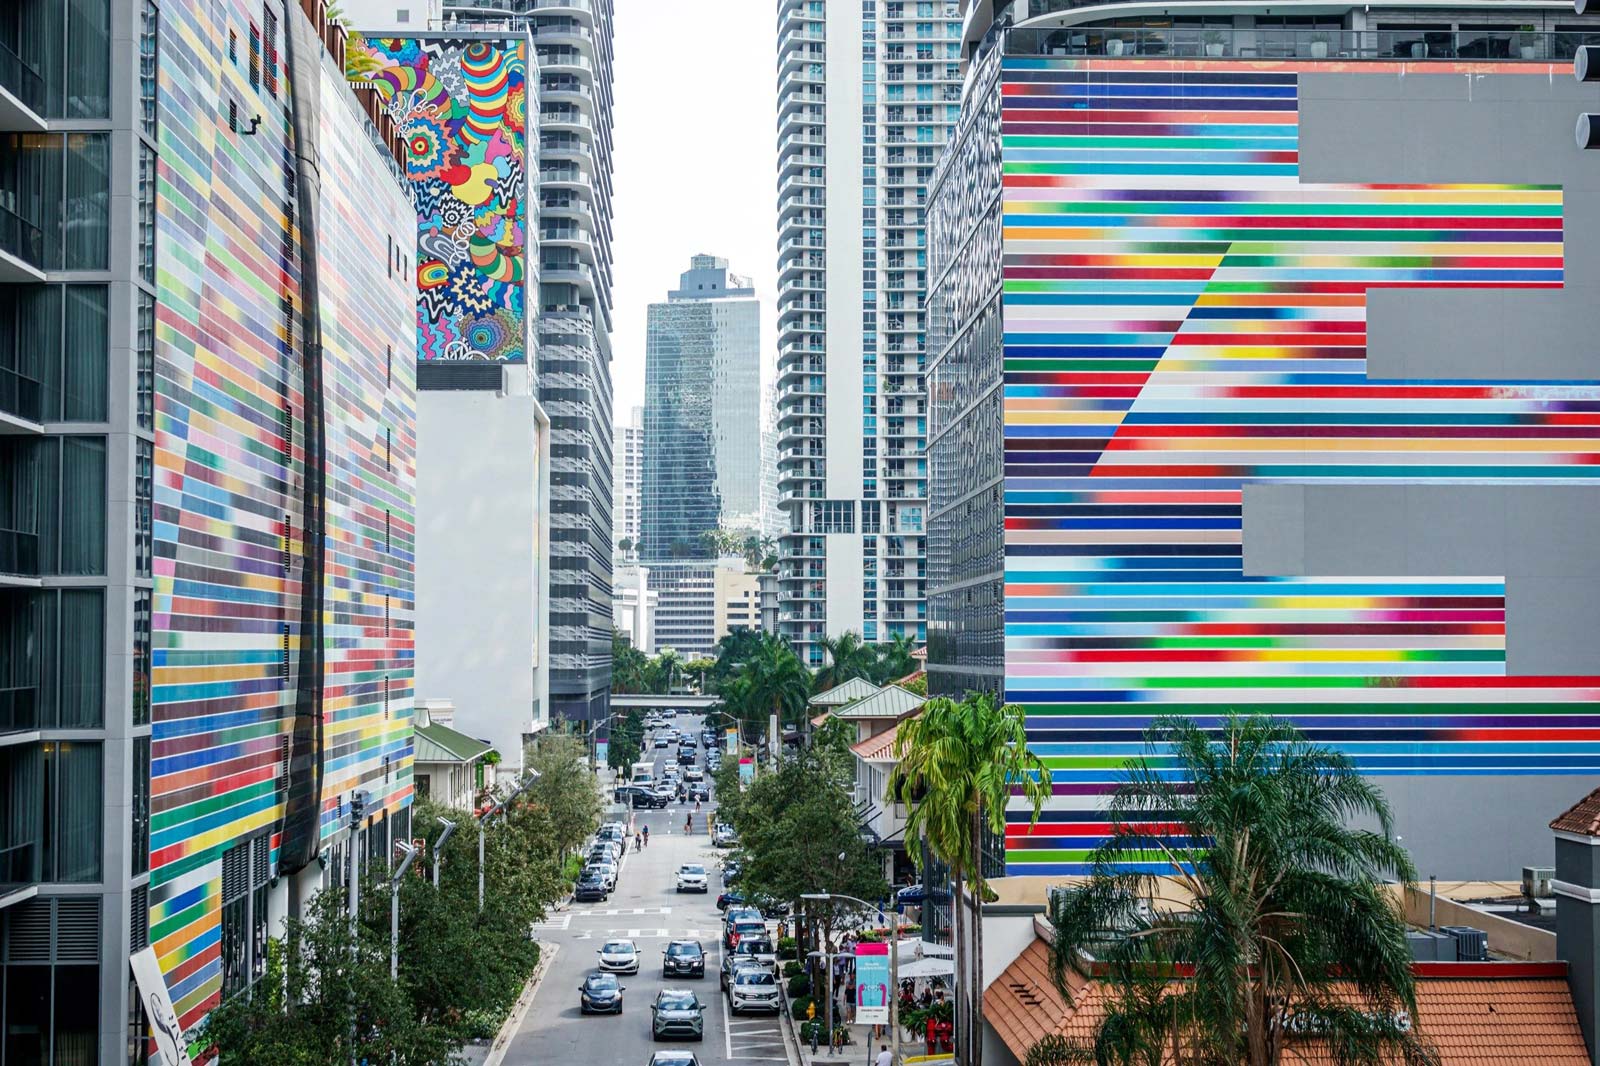 Miami votada como una de las 50 ciudades más hermosas para explorar en el mundo en 2022